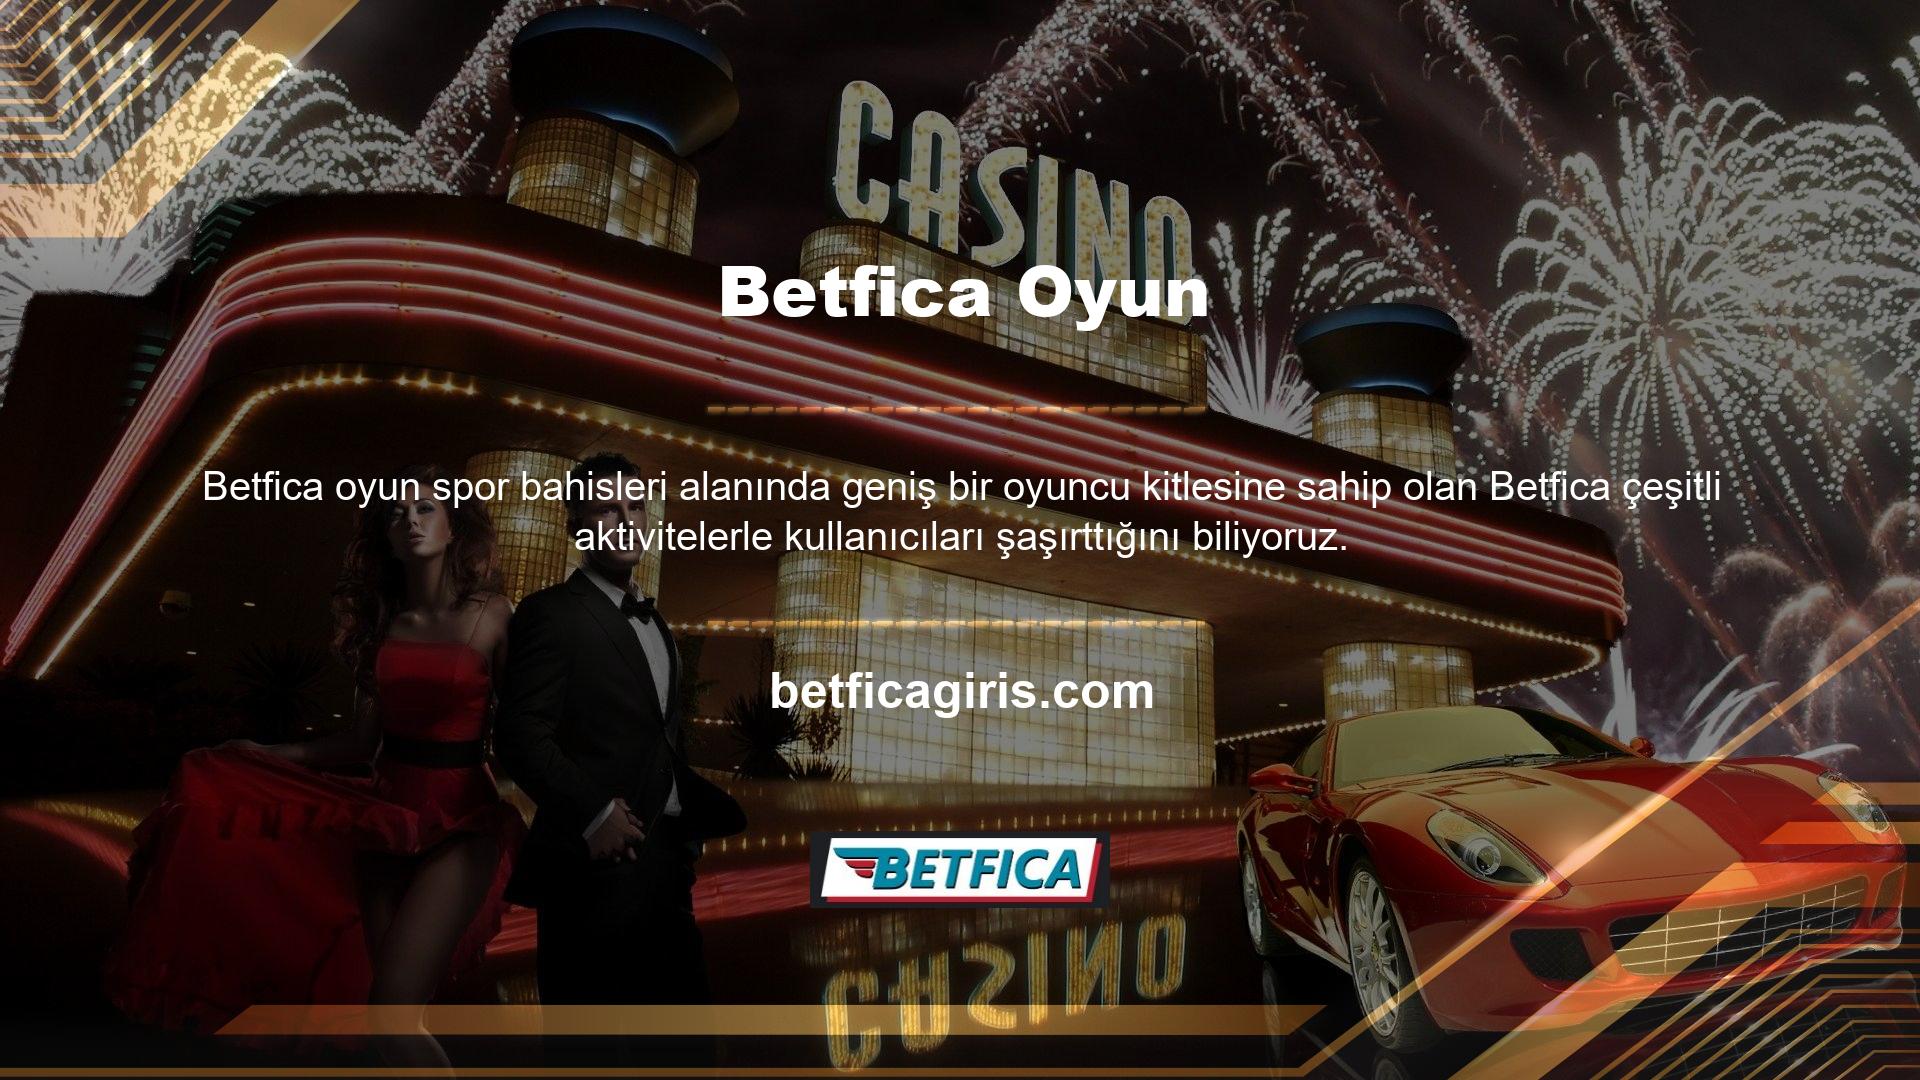 Son olarak, kullanıcılara katıldıkları yeni Betfica grup turnuvalarında verilen ödüller hakkında bilgiler yer almaktadır